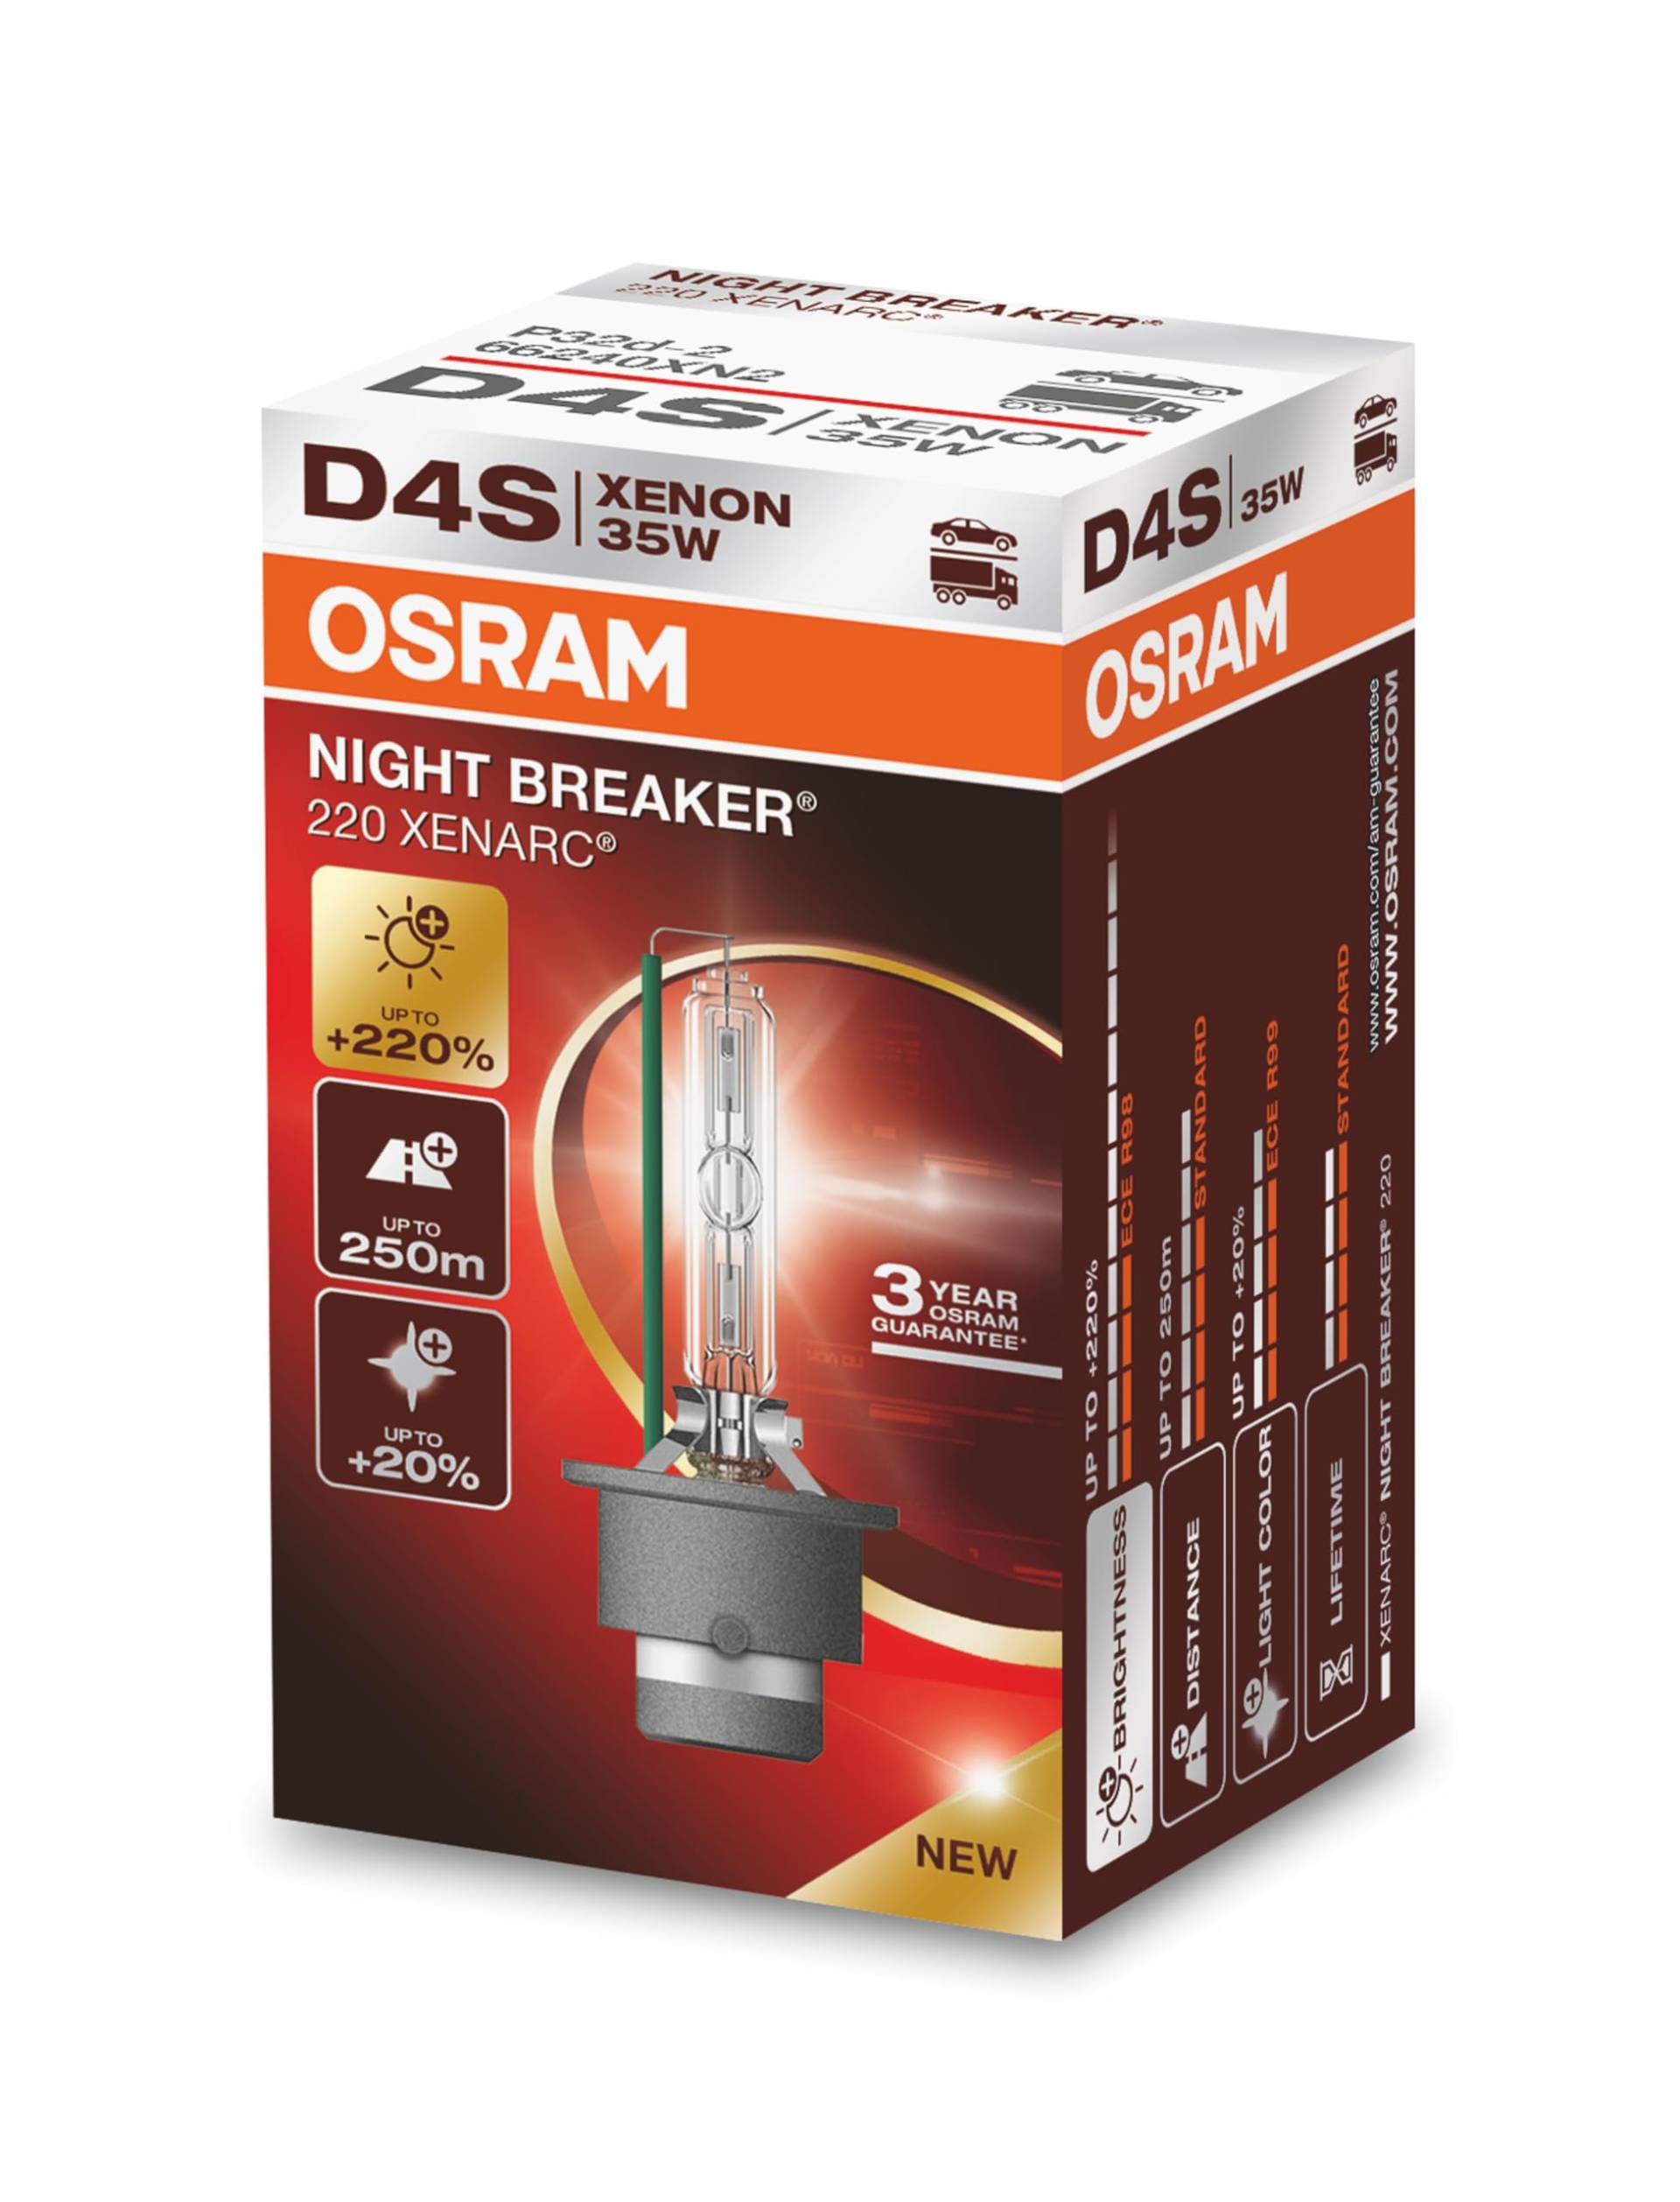 OSRAM XENARC NIGHT BREAKER 220, D4S, 220% mehr Helligkeit, Xenon-Scheinwerferlampe, 66440XN2, Faltschachtel (1 Lampe) von Osram